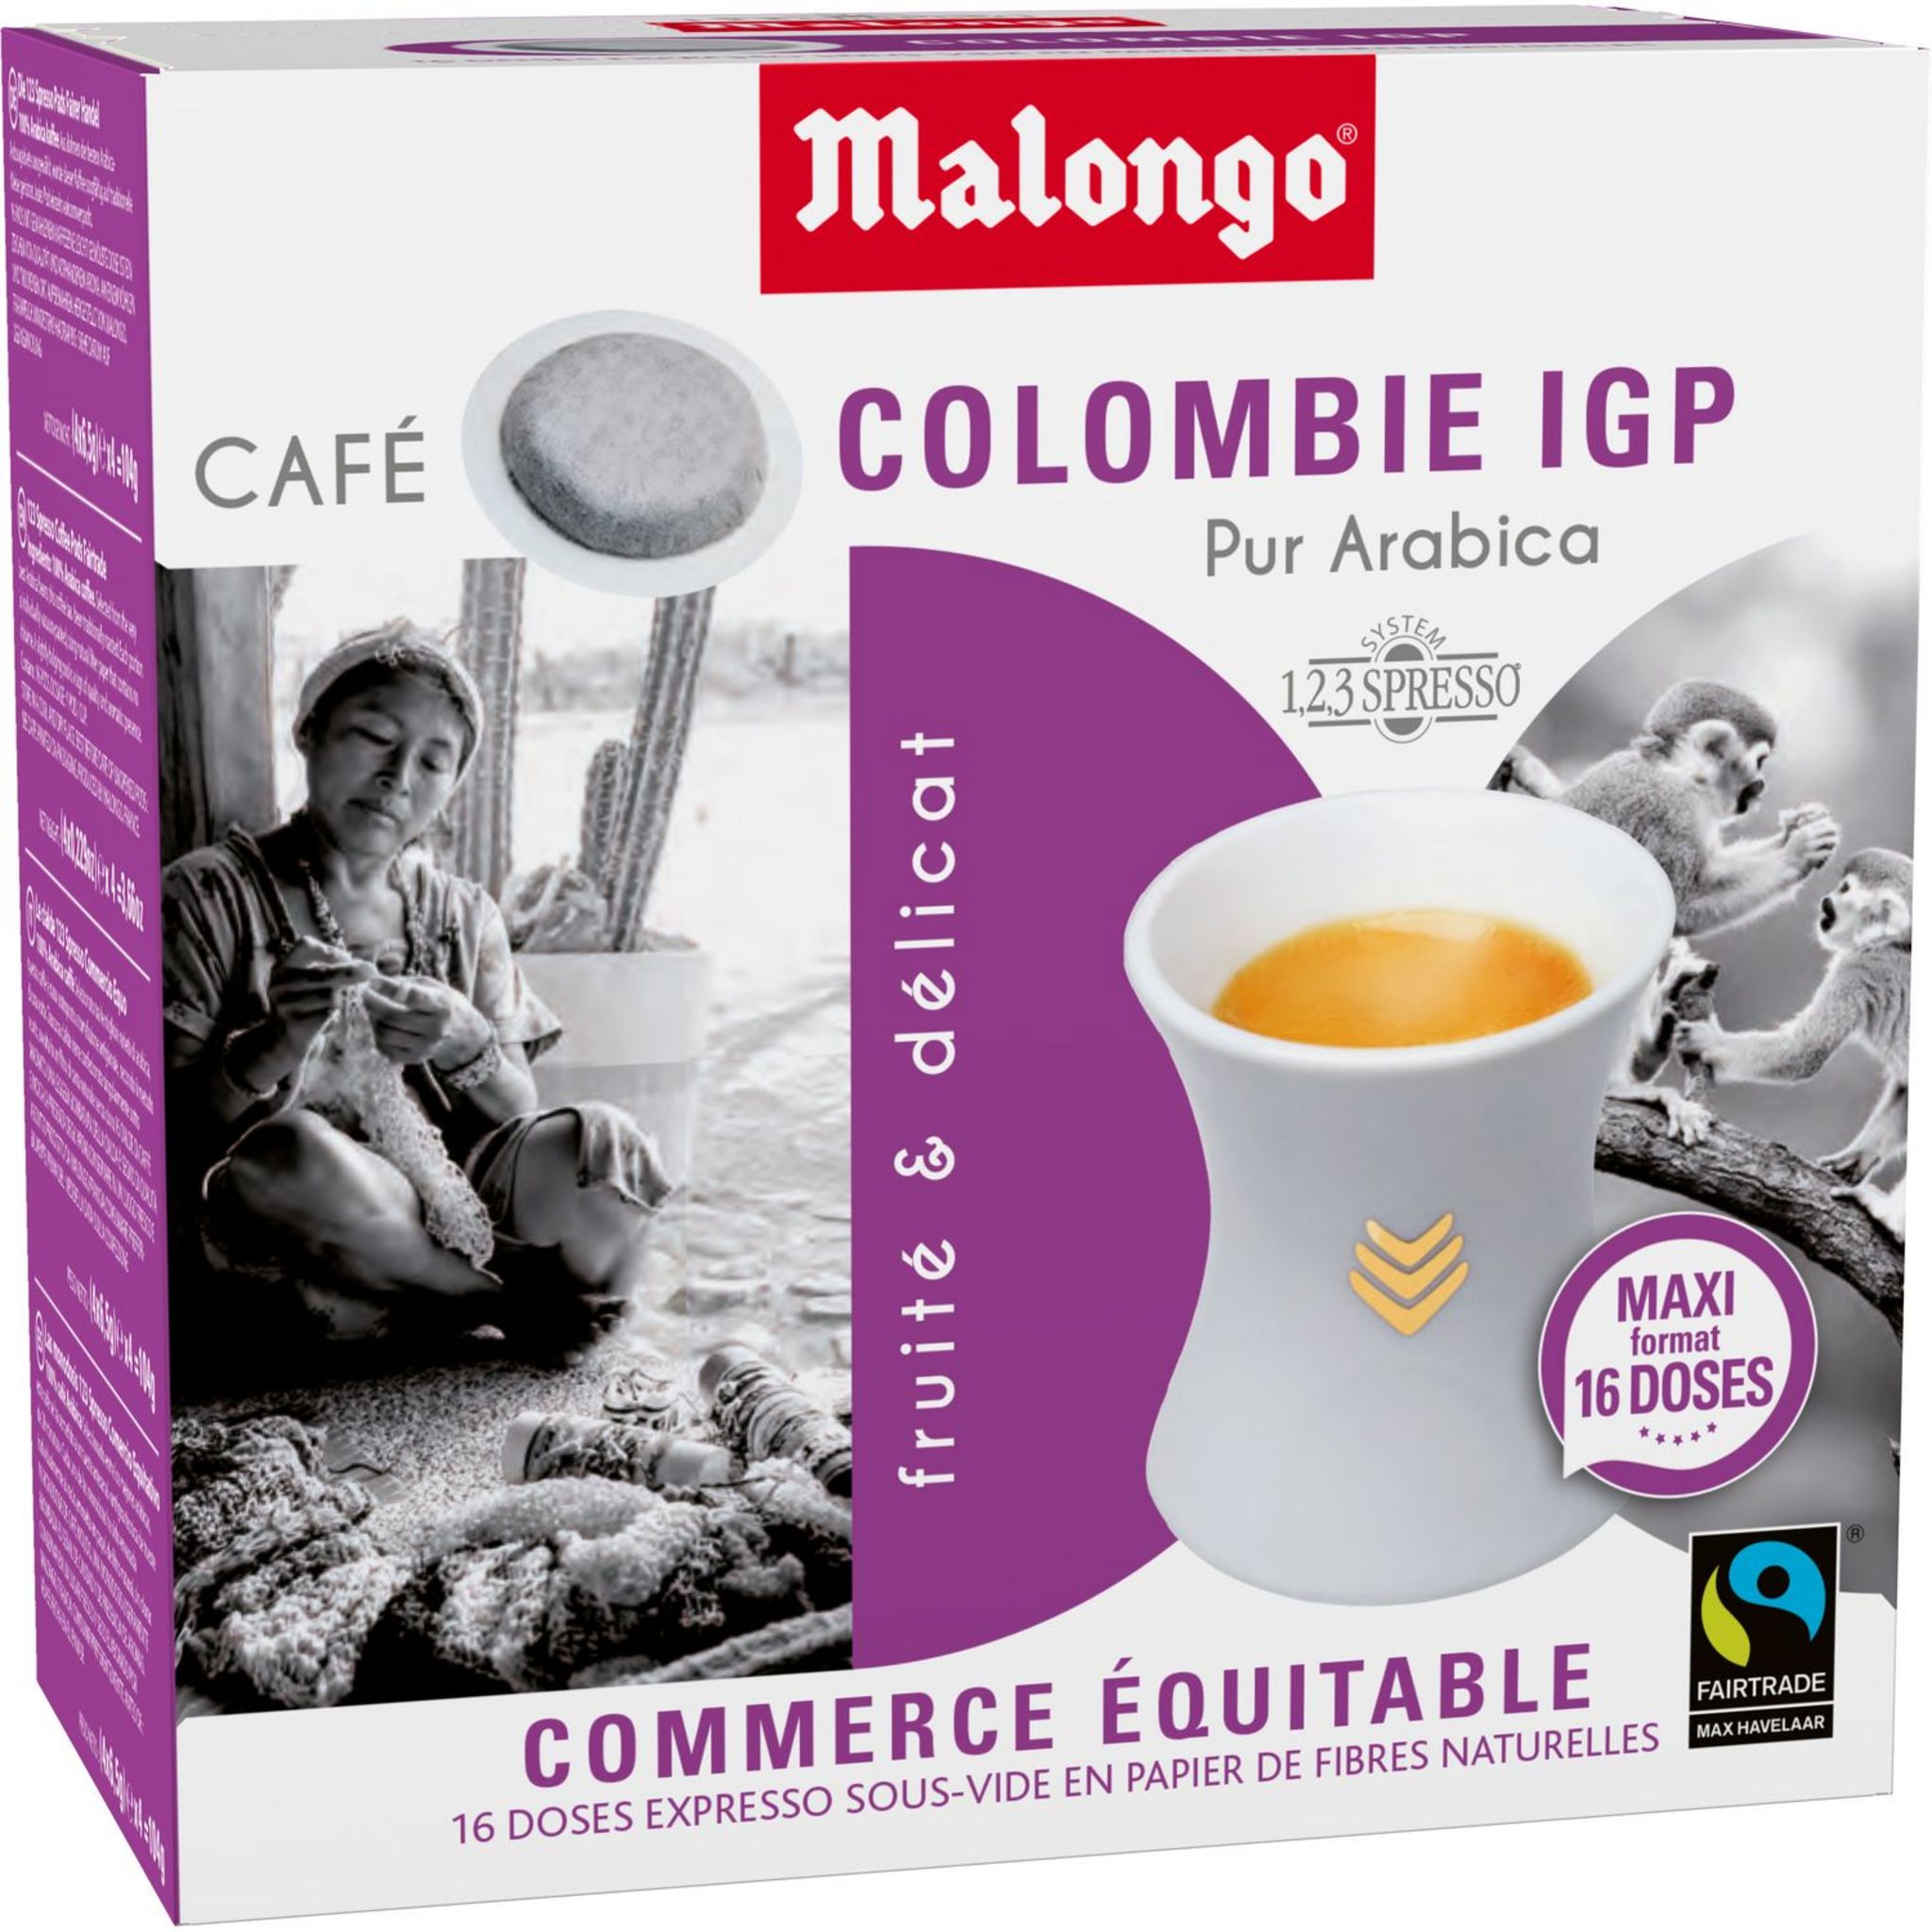 Promo Dosettes De Café Malongo 2+1 Offert Au Choix chez Auchan Direct 